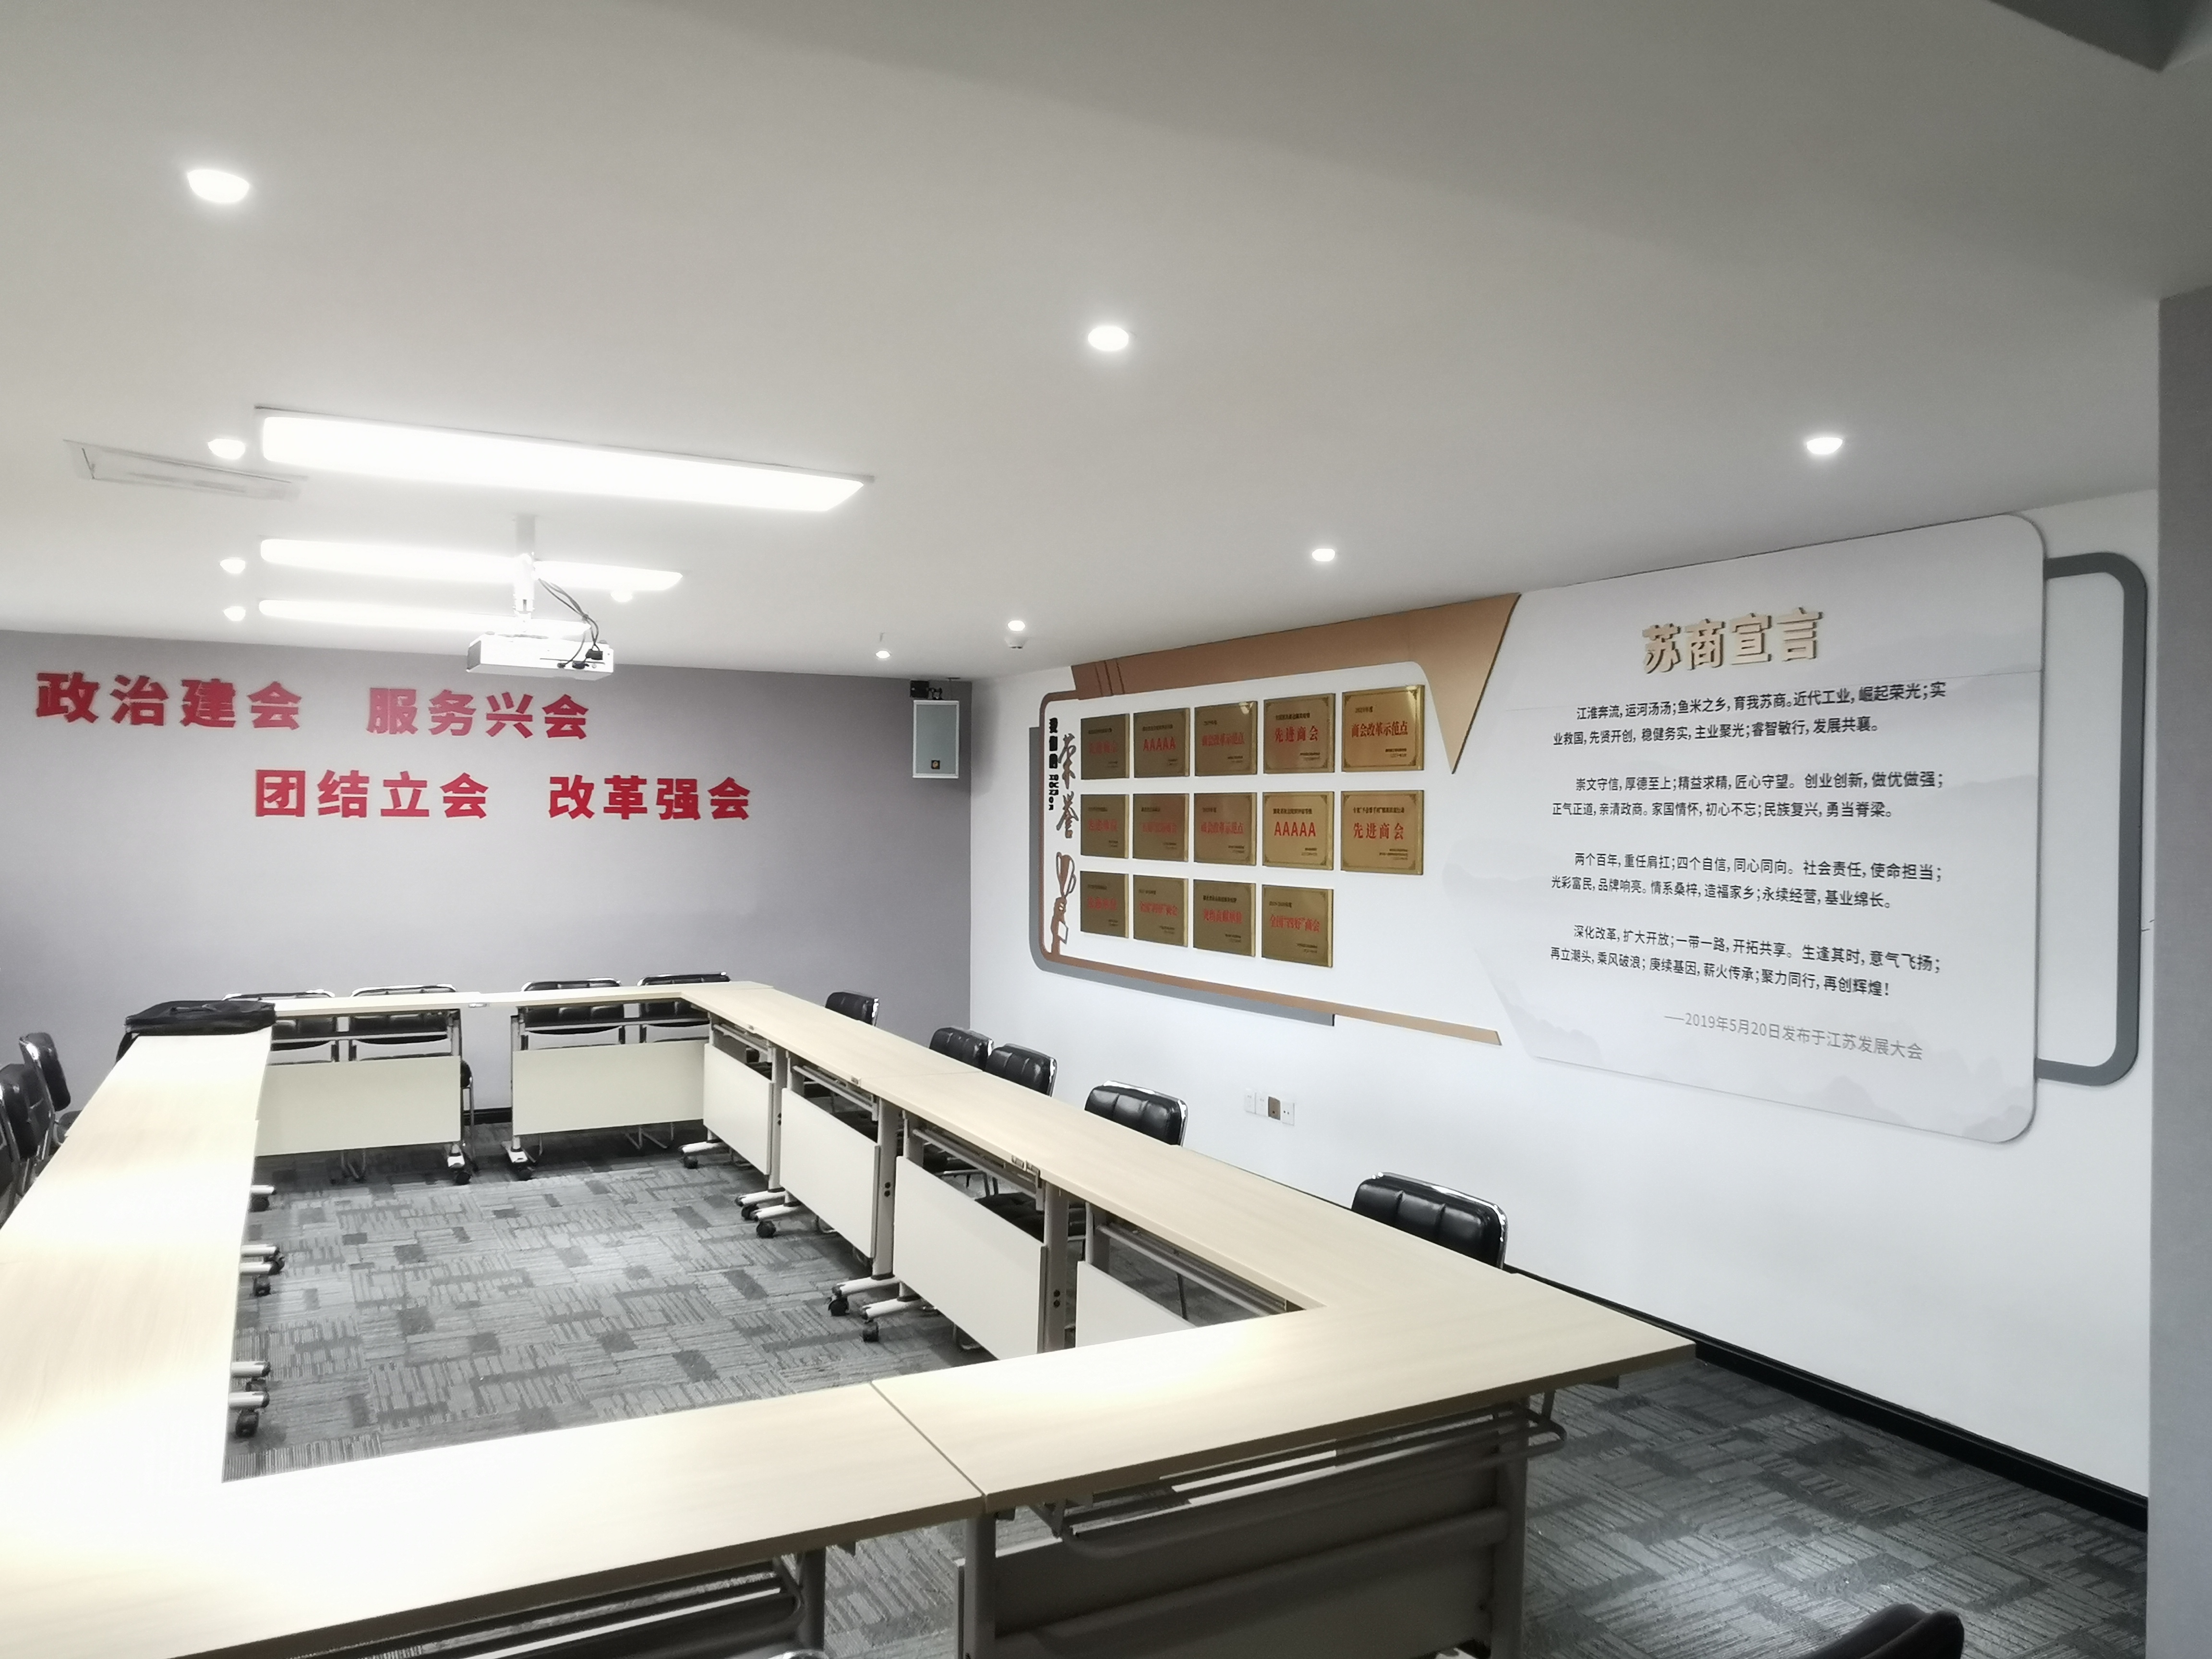 武汉创意汇广告公司给湖北江苏商会安装文化墙